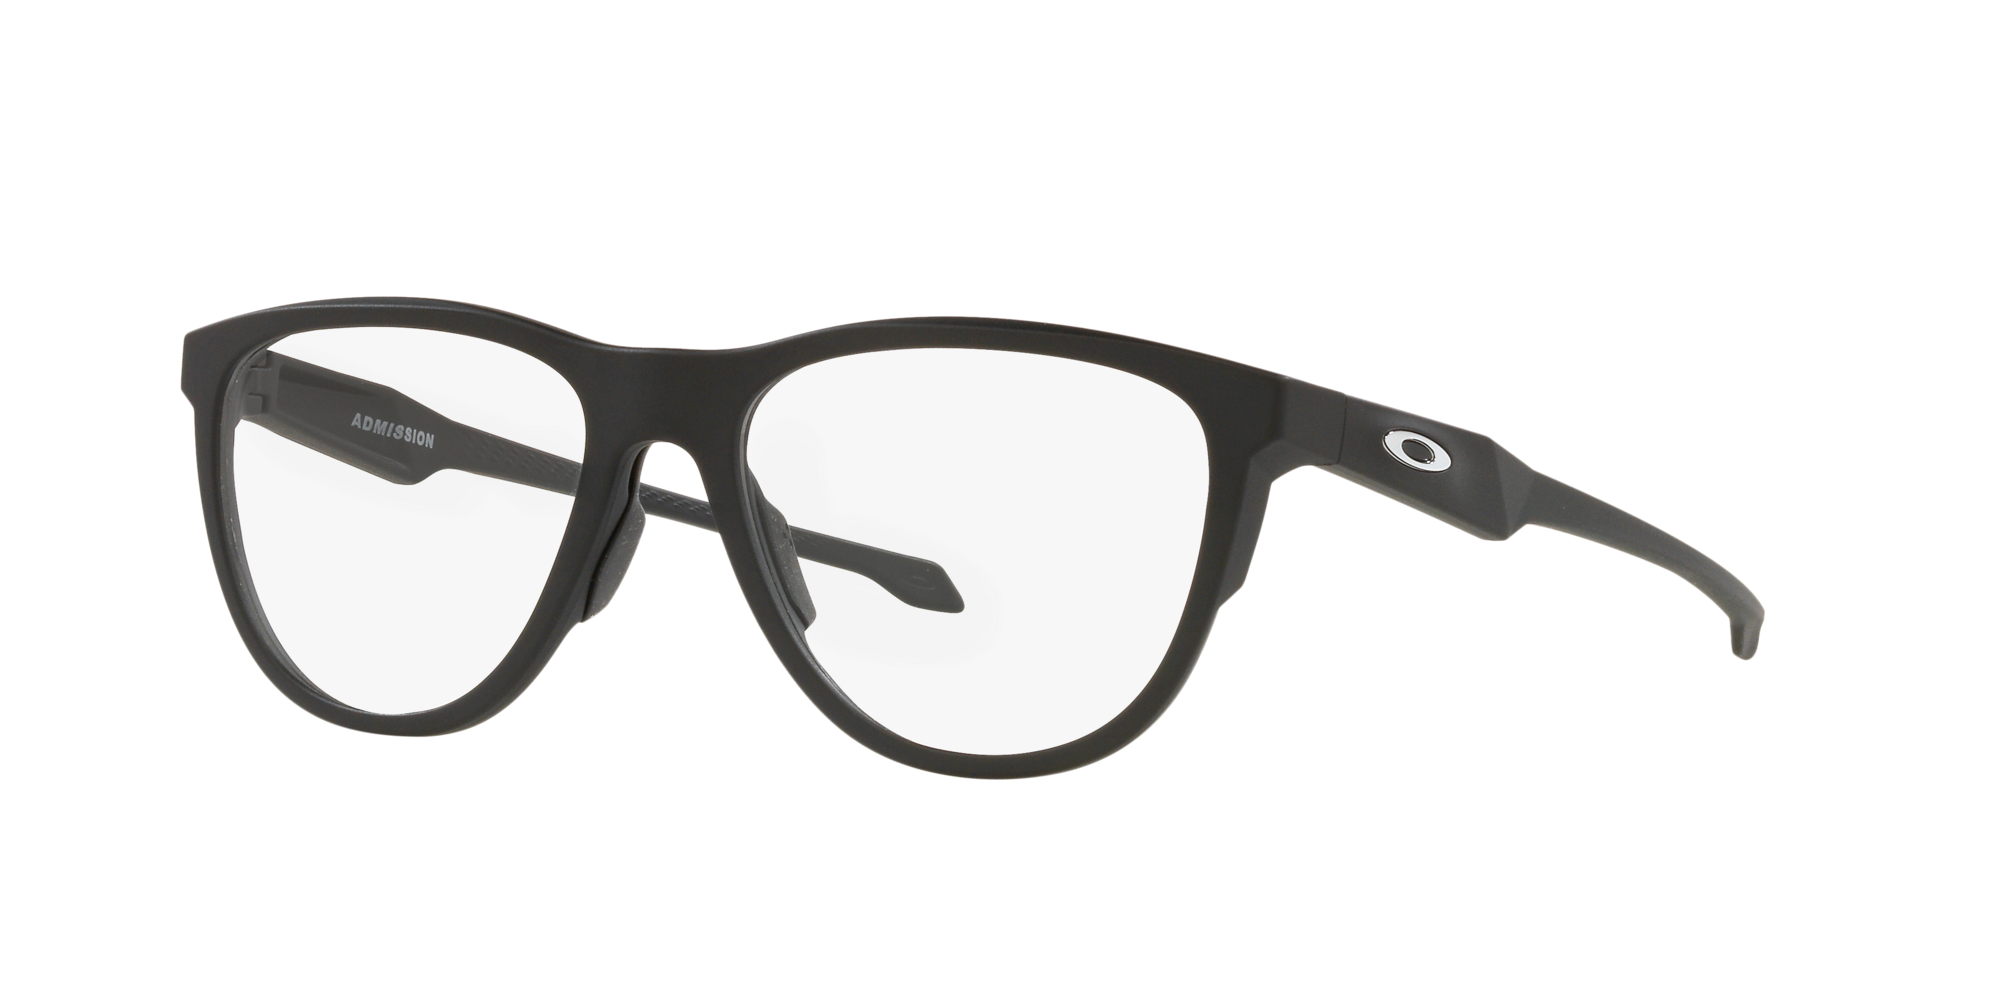 Das Bild zeigt die Korrektionsbrille OX8056  805601  von der Marke Oakley  in  schwarz satiniert.